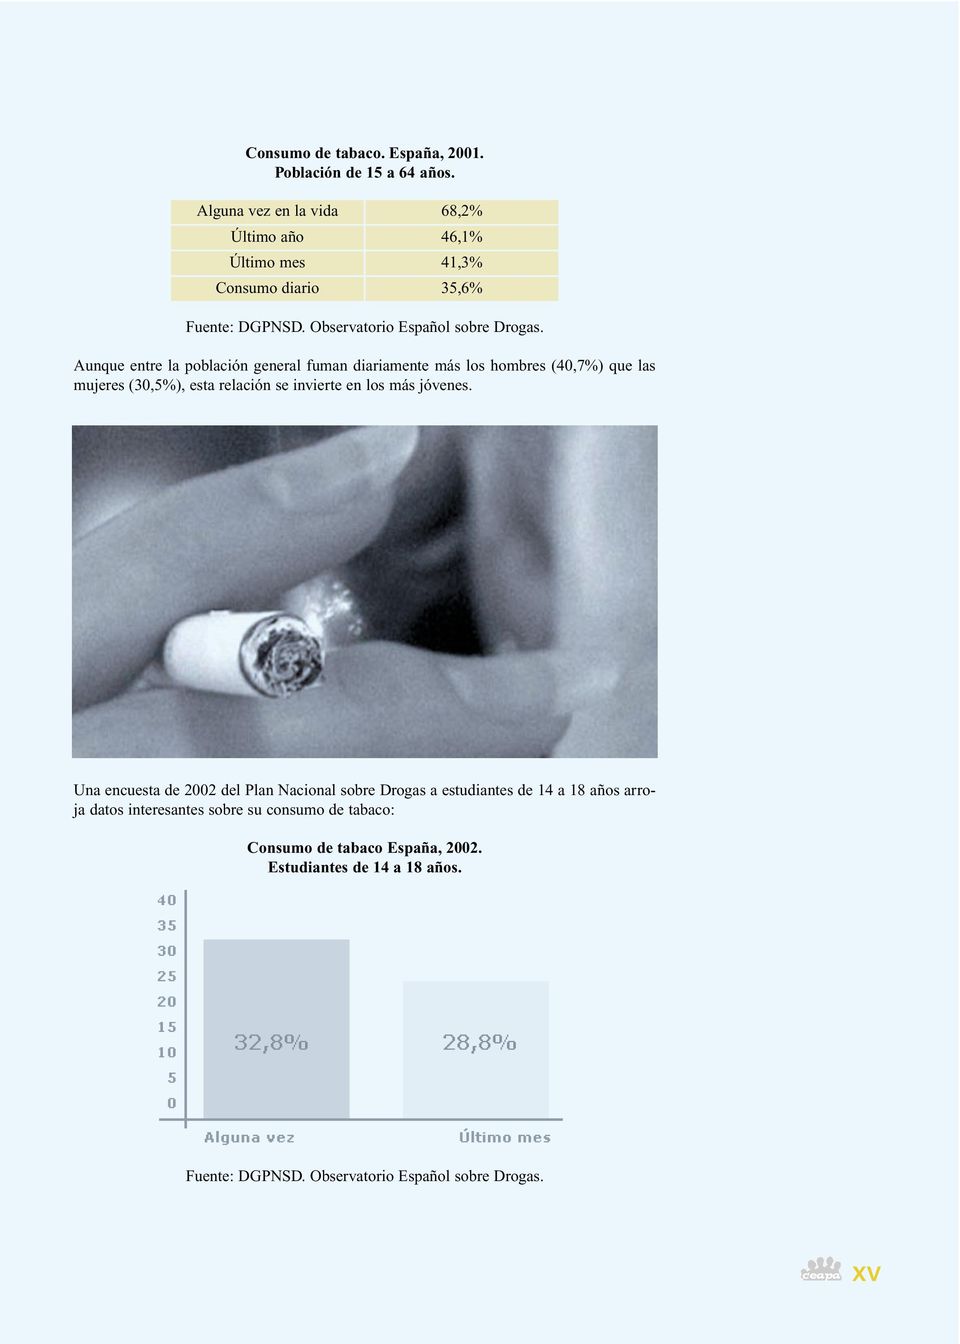 Aunque entre la población general fuman diariamente más los hombres (40,7%) que las mujeres (30,5%), esta relación se invierte en los más jóvenes.